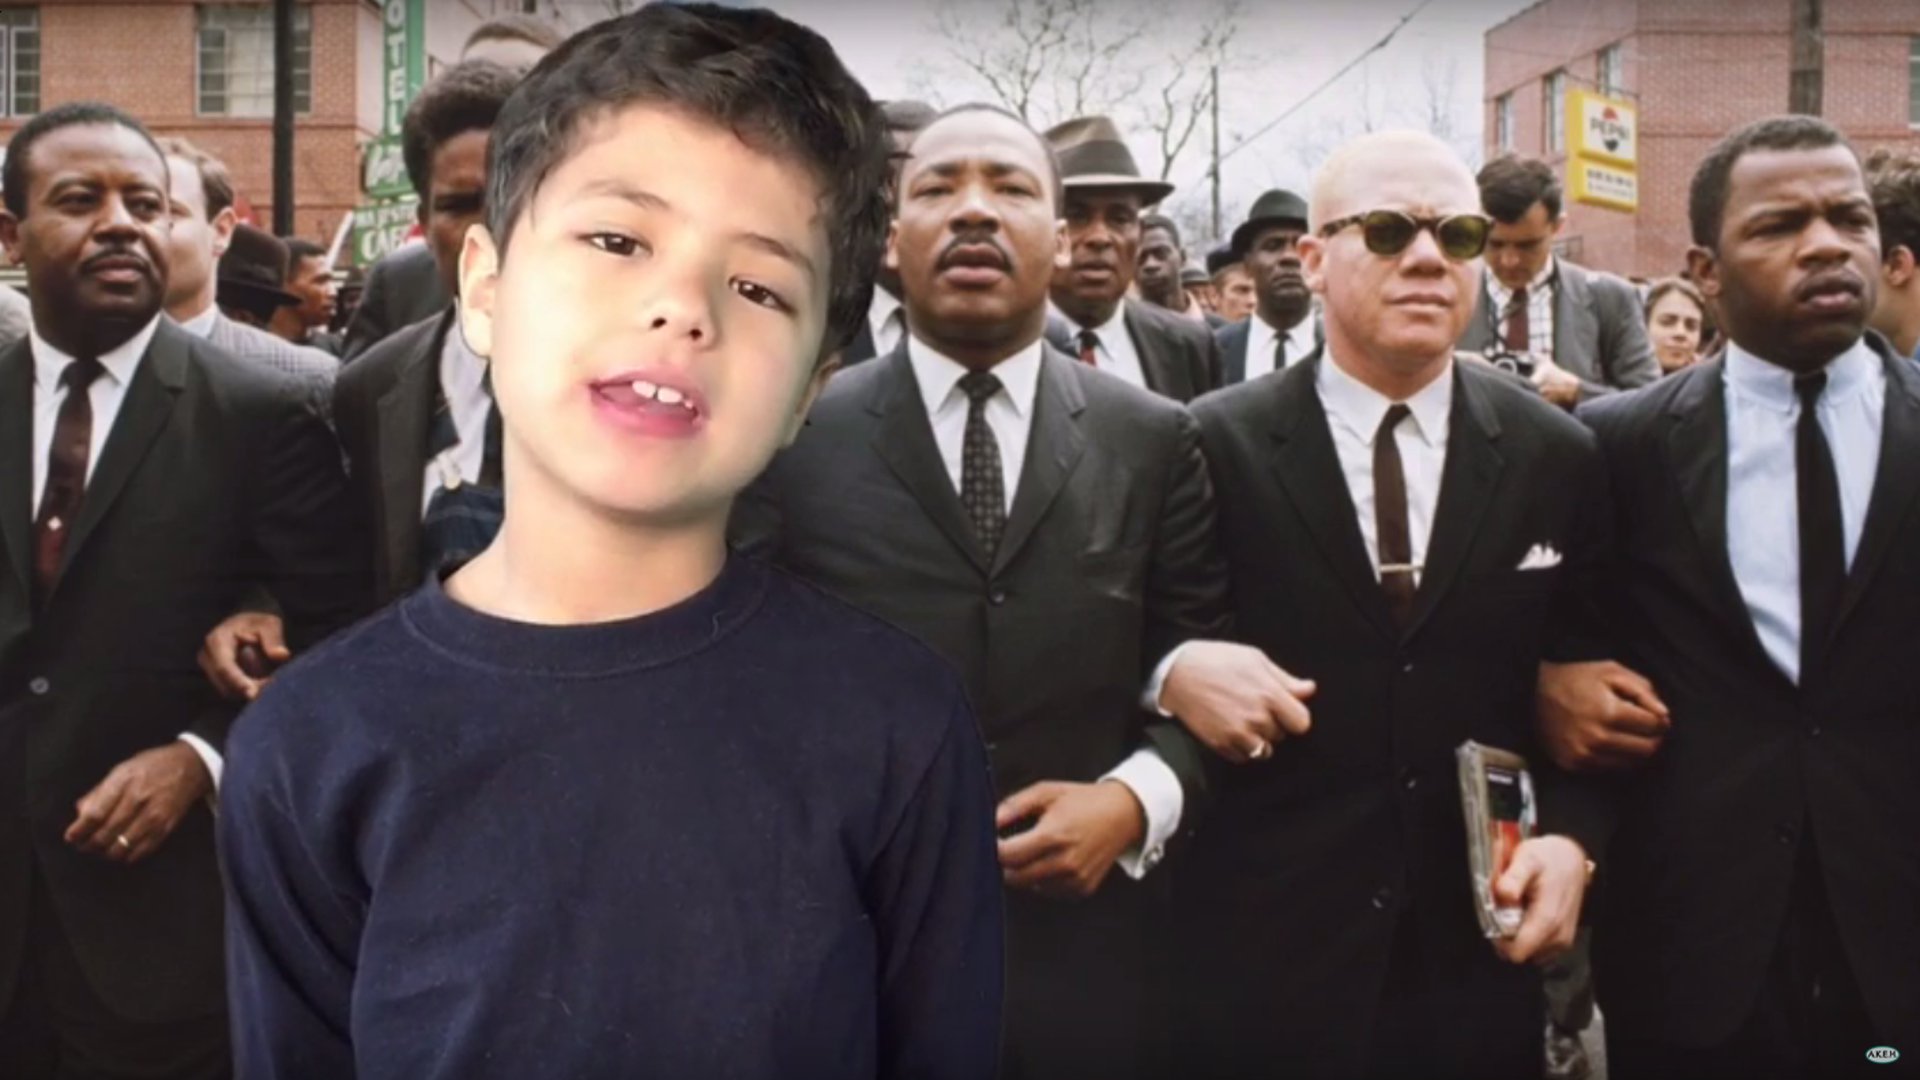 Zu Ehren von Martin Luther King: Zehnjähriger Junge erklärt Geschichte